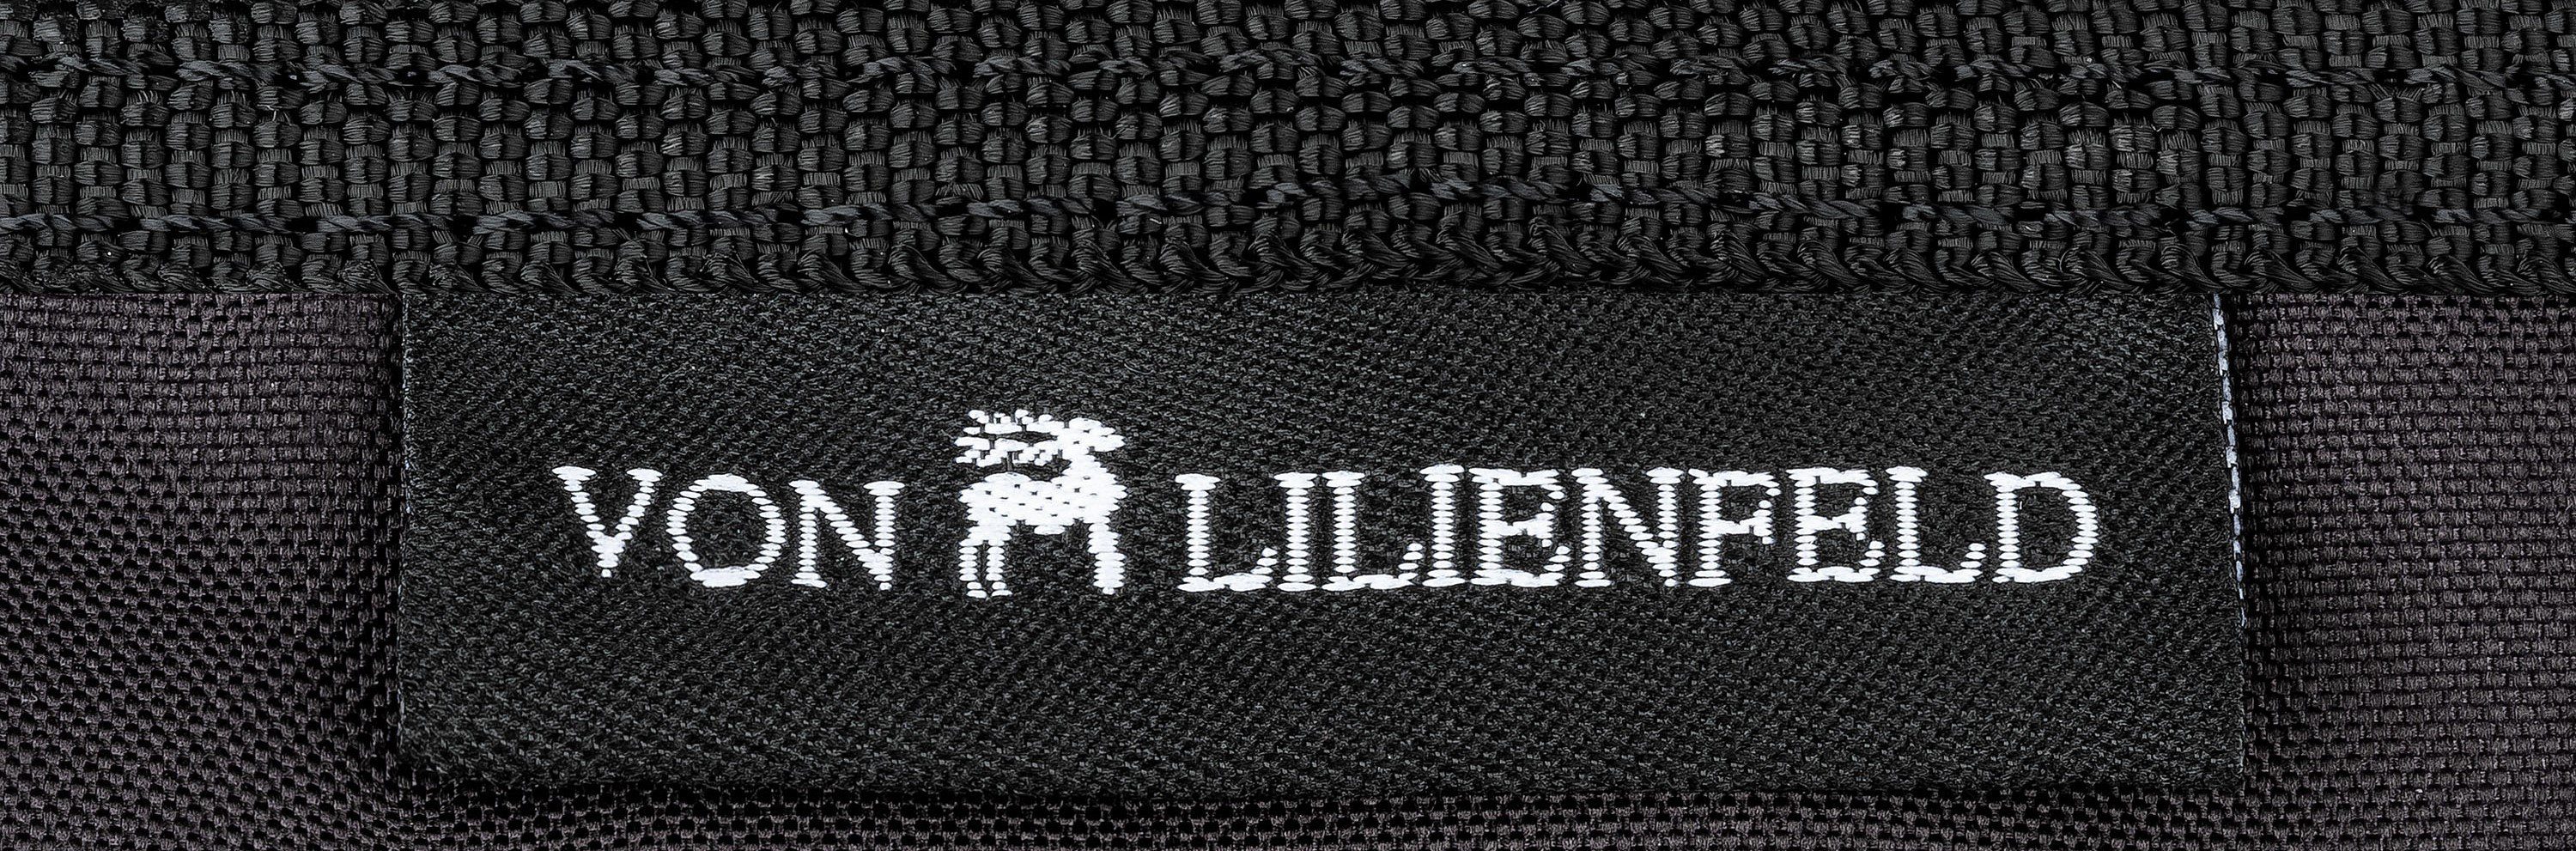 von Lilienfeld Handtasche Tasche mit Motiv Teckel Rauhaardackel Hund